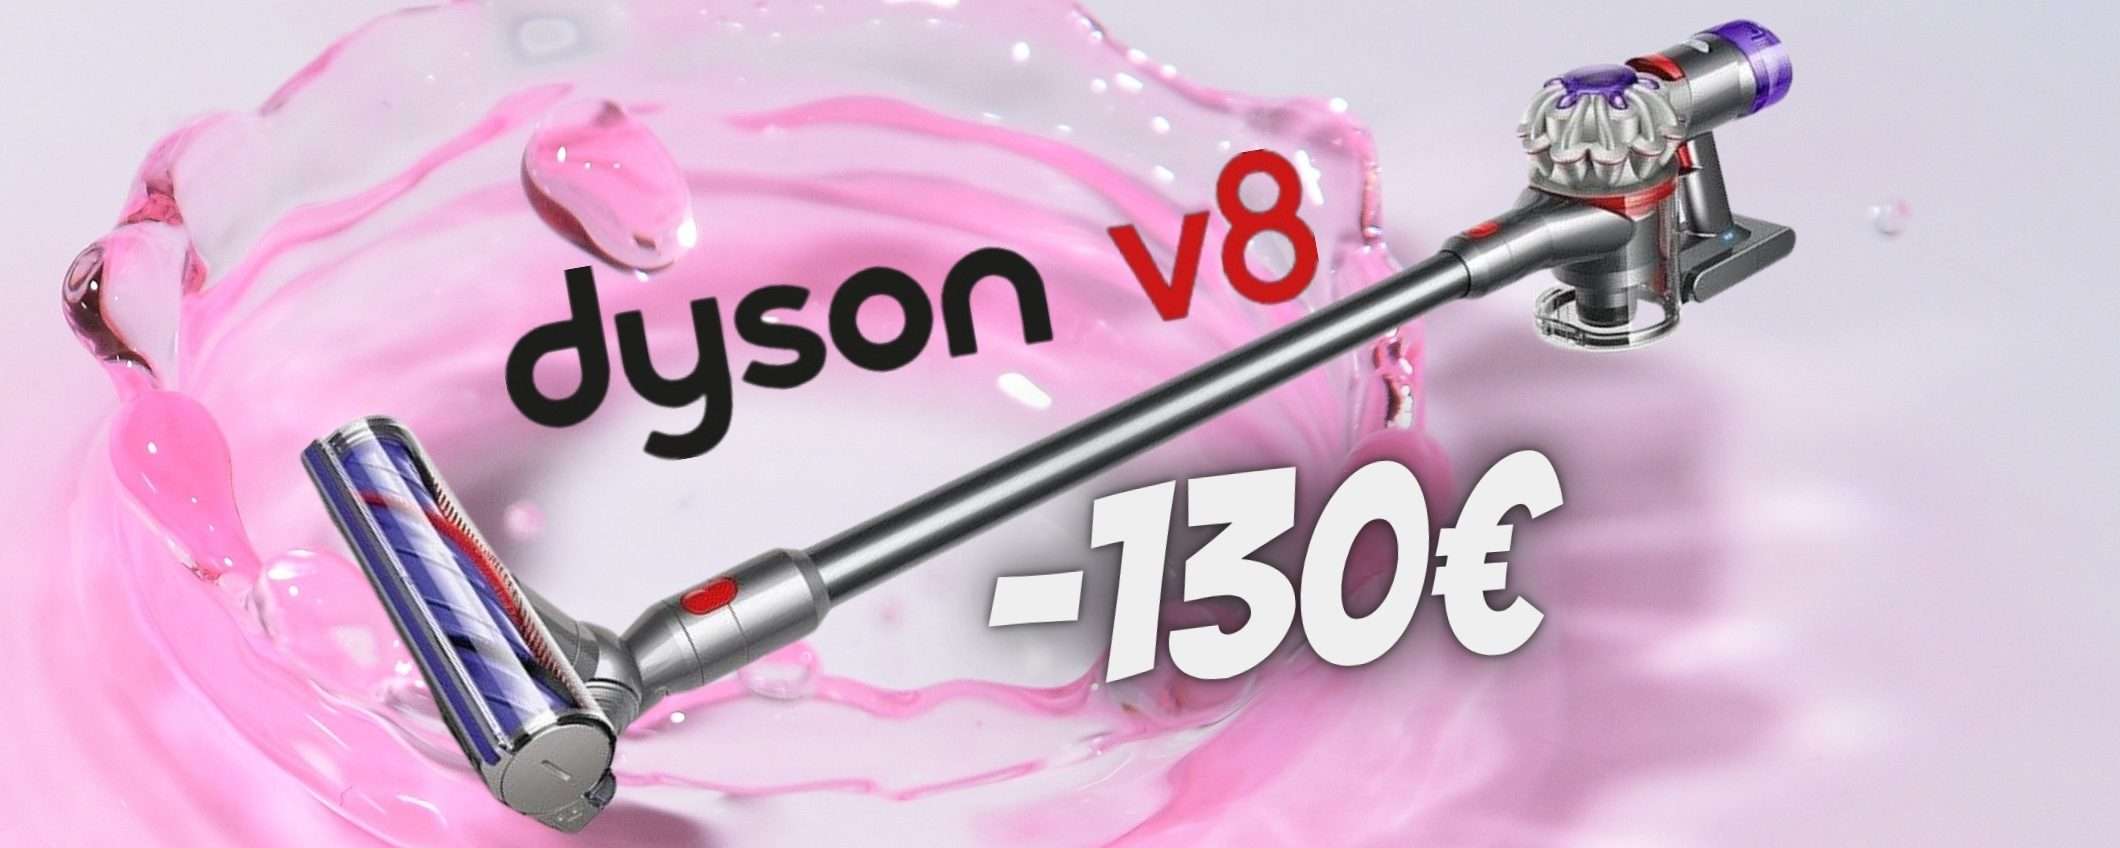 Dyson V8 in SCONTO ASSURDO di 130€ su eBay, il SOGNO si avvera